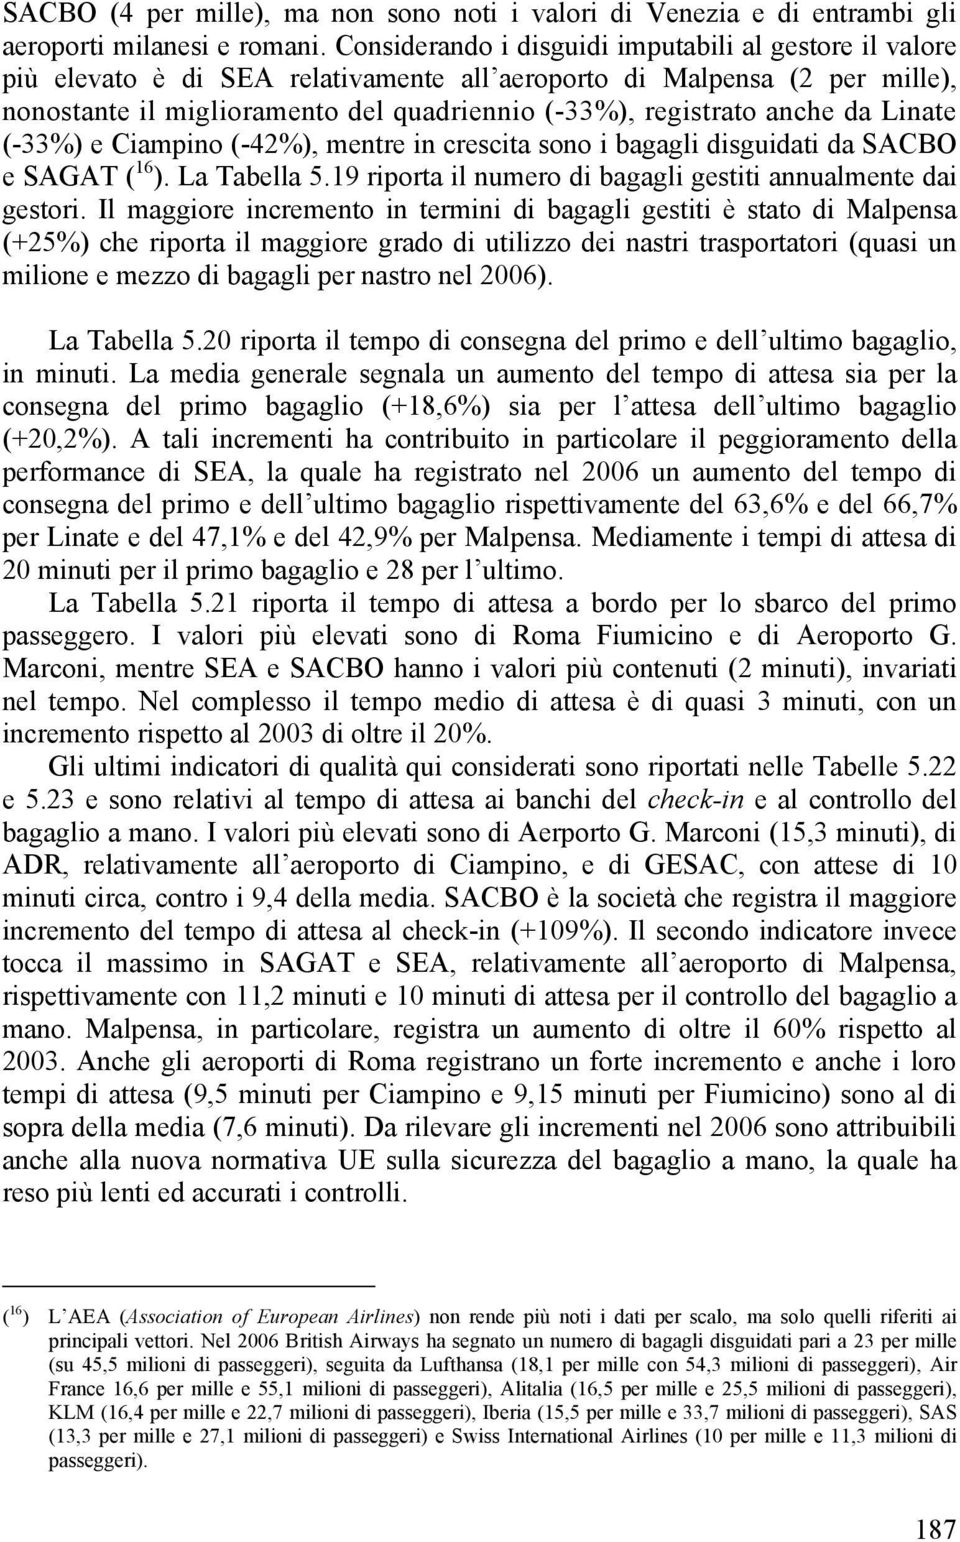 Linate (-33%) e Ciampino (-42%), mentre in crescita sono i bagagli sguidati da SACBO e SAGAT ( 16 ). La Tabella 5.19 riporta il numero bagagli gestiti annualmente dai gestori.